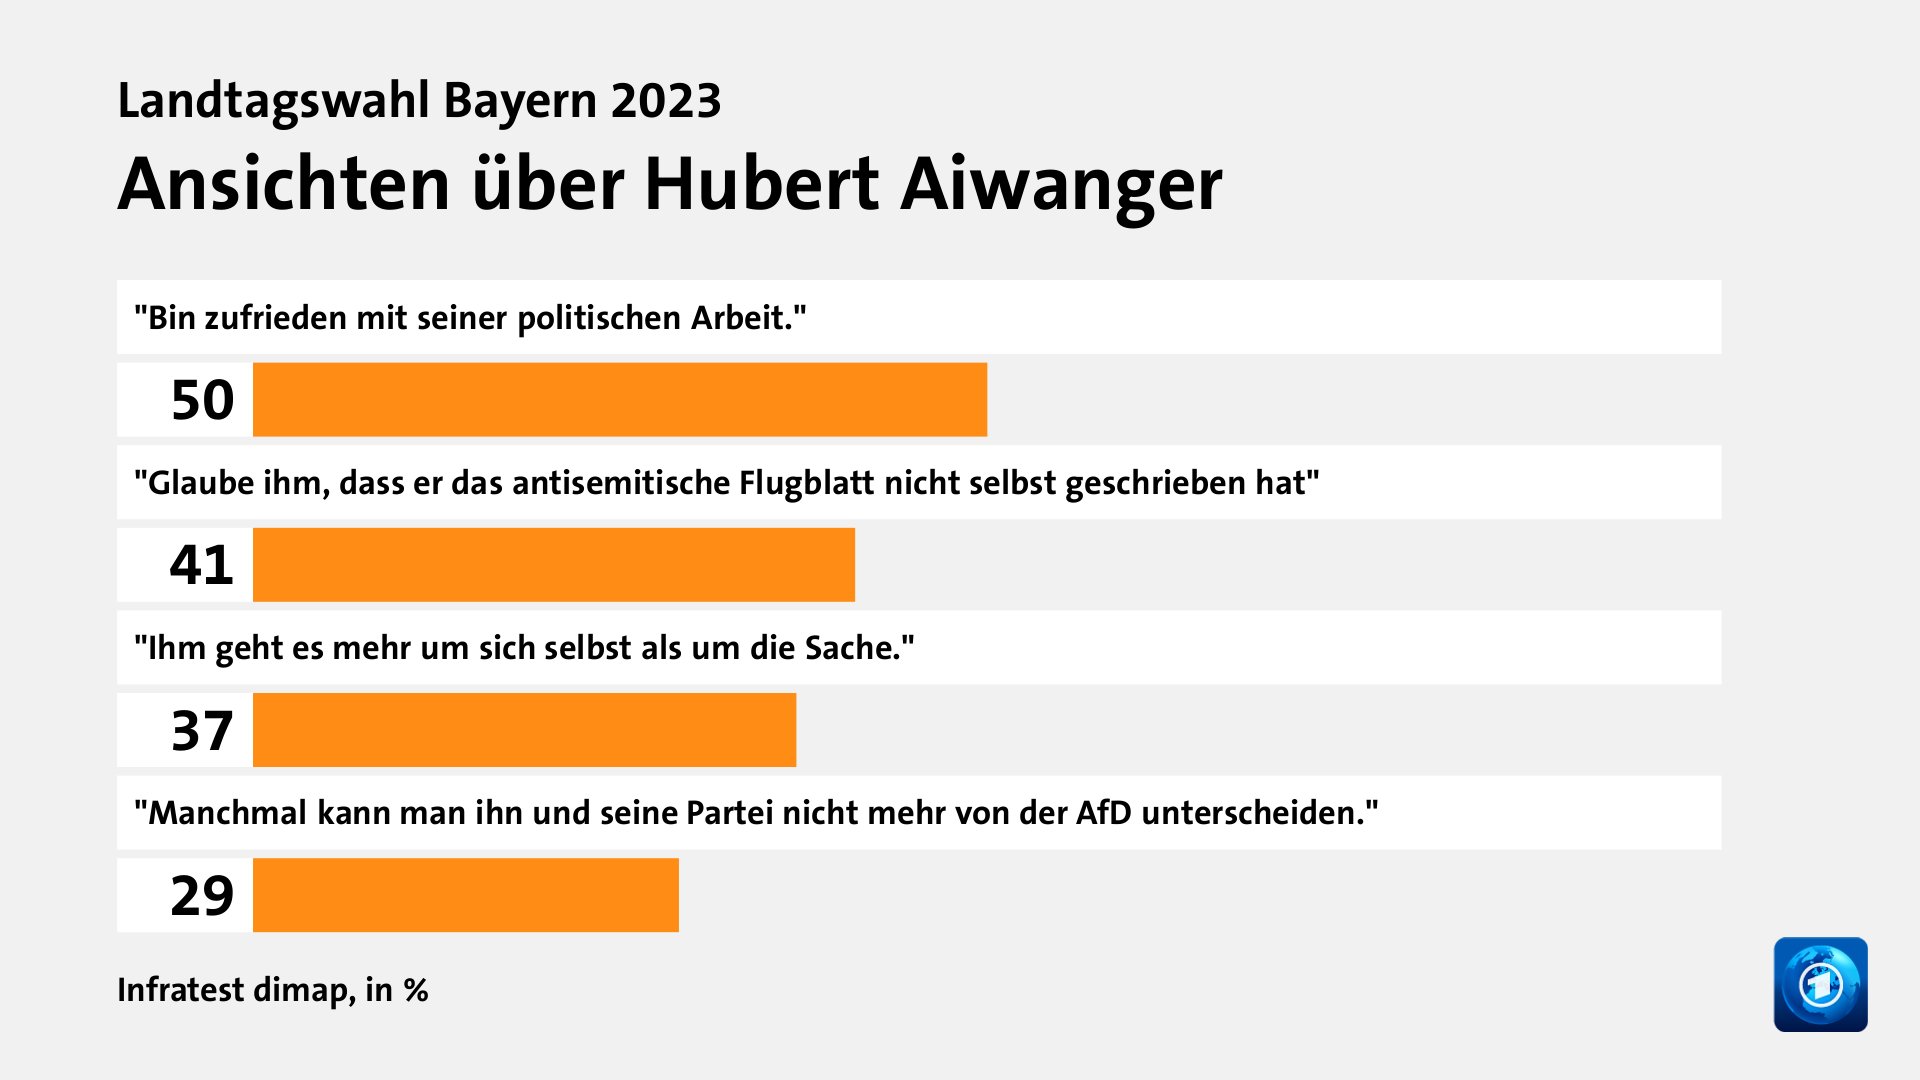 Ansichten über Hubert Aiwanger, in %: 